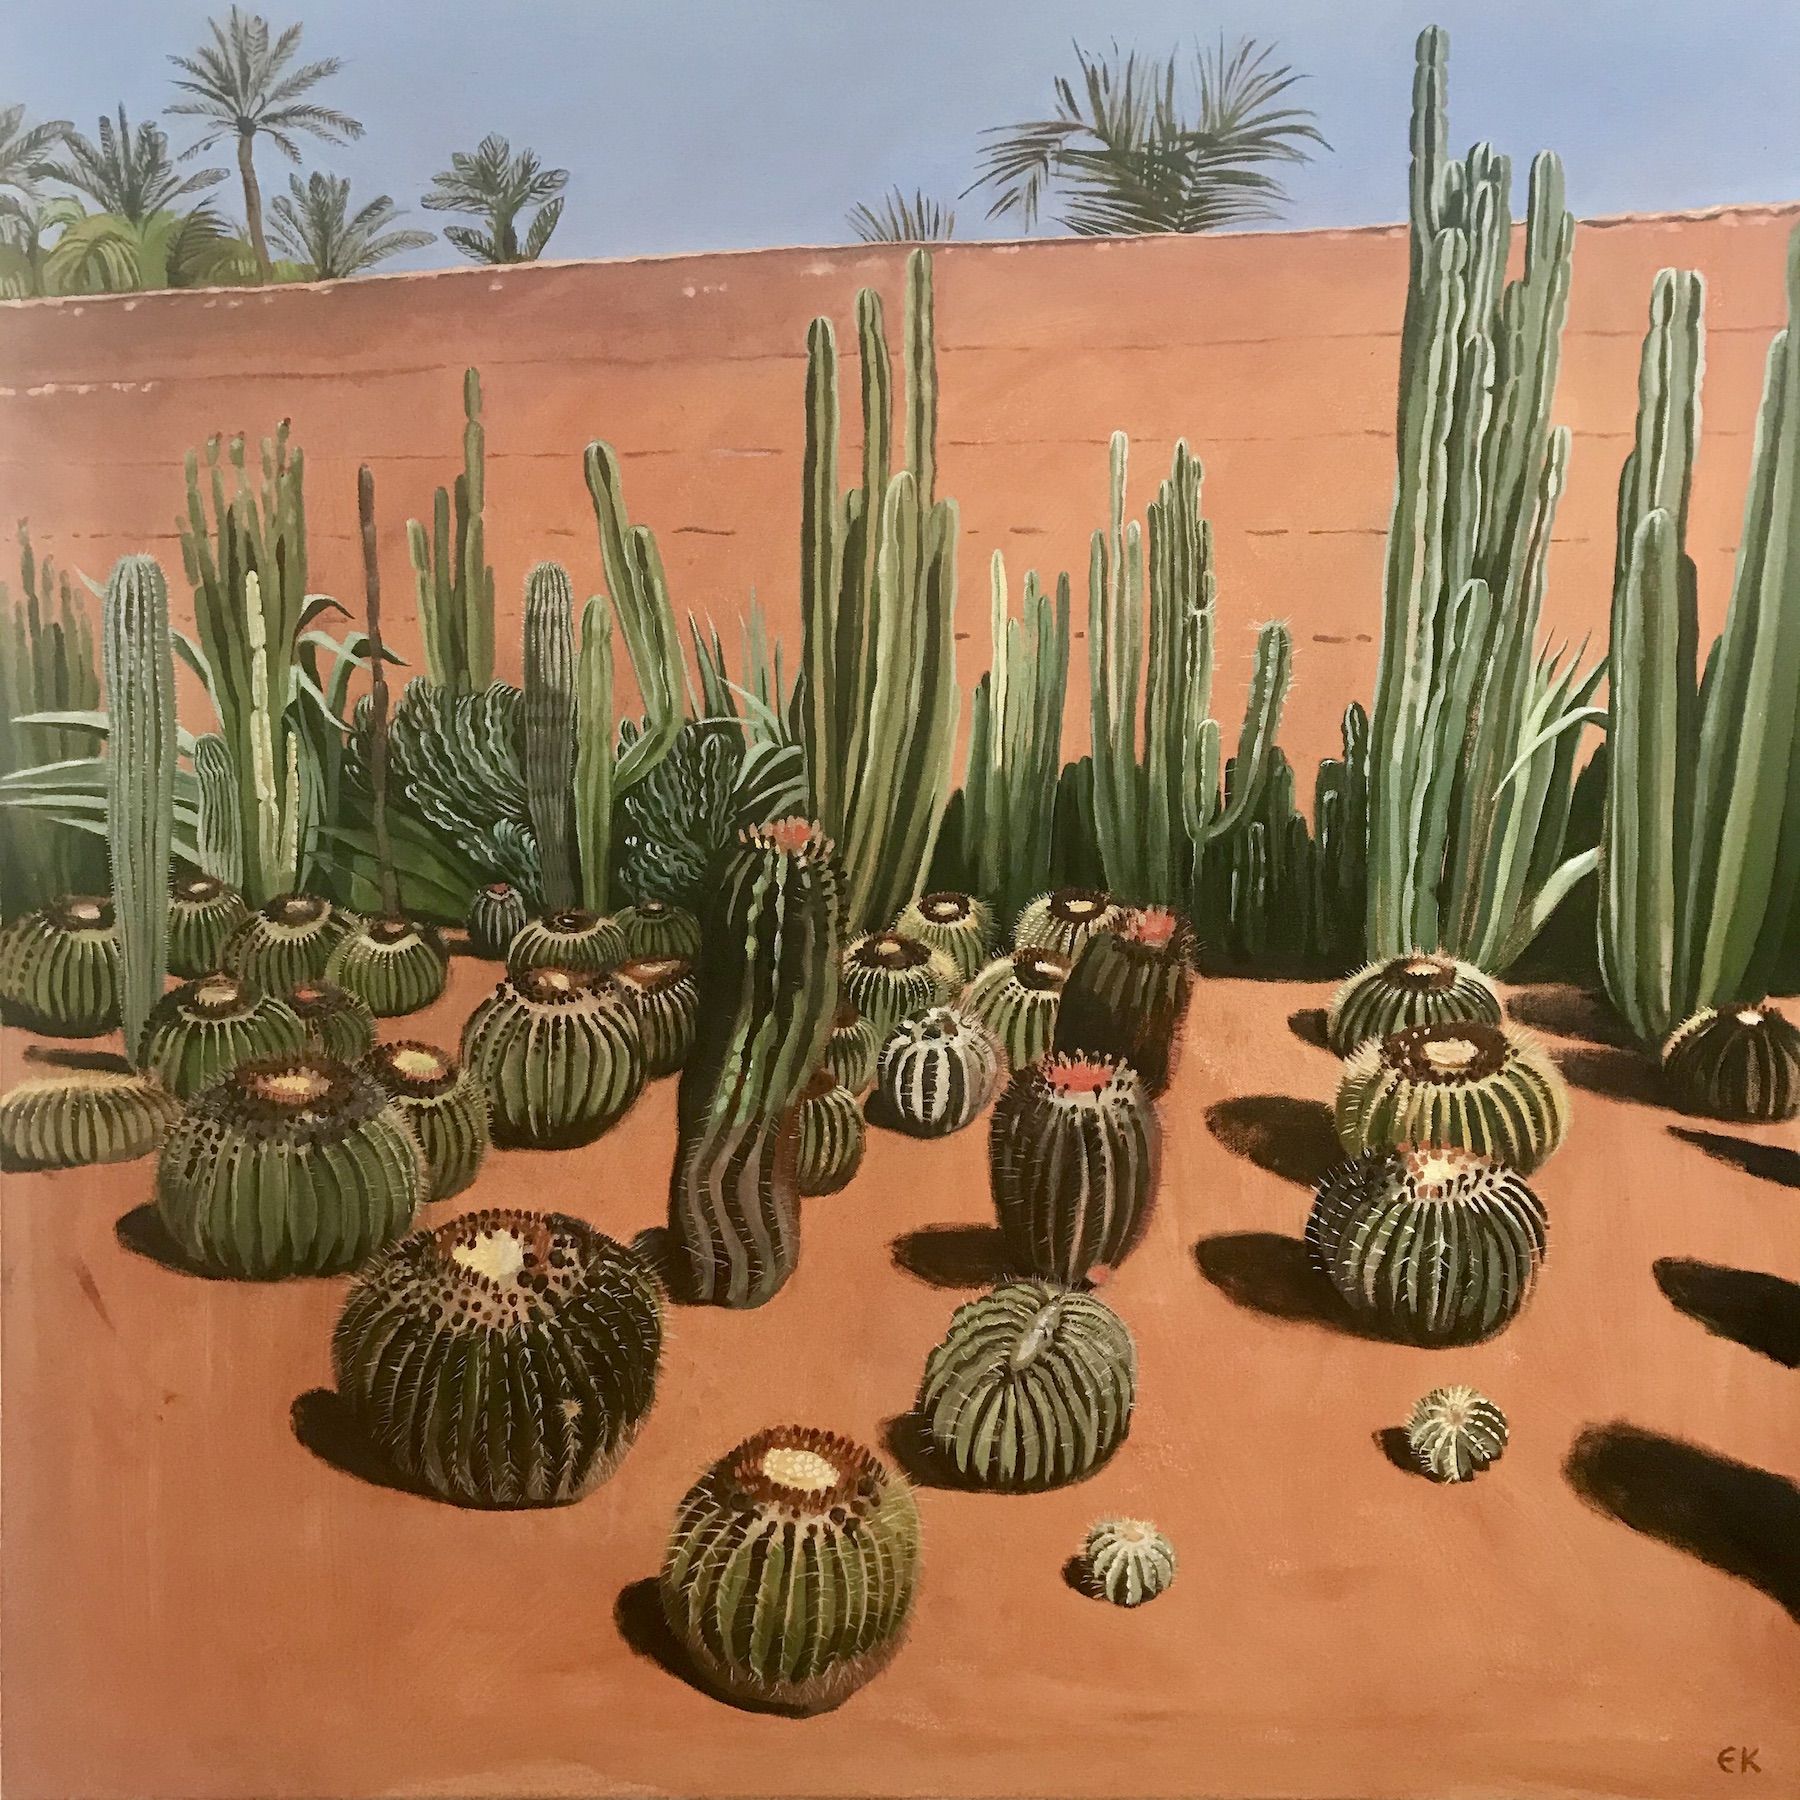 Cactus Madness by Elaine Kazimierczuk